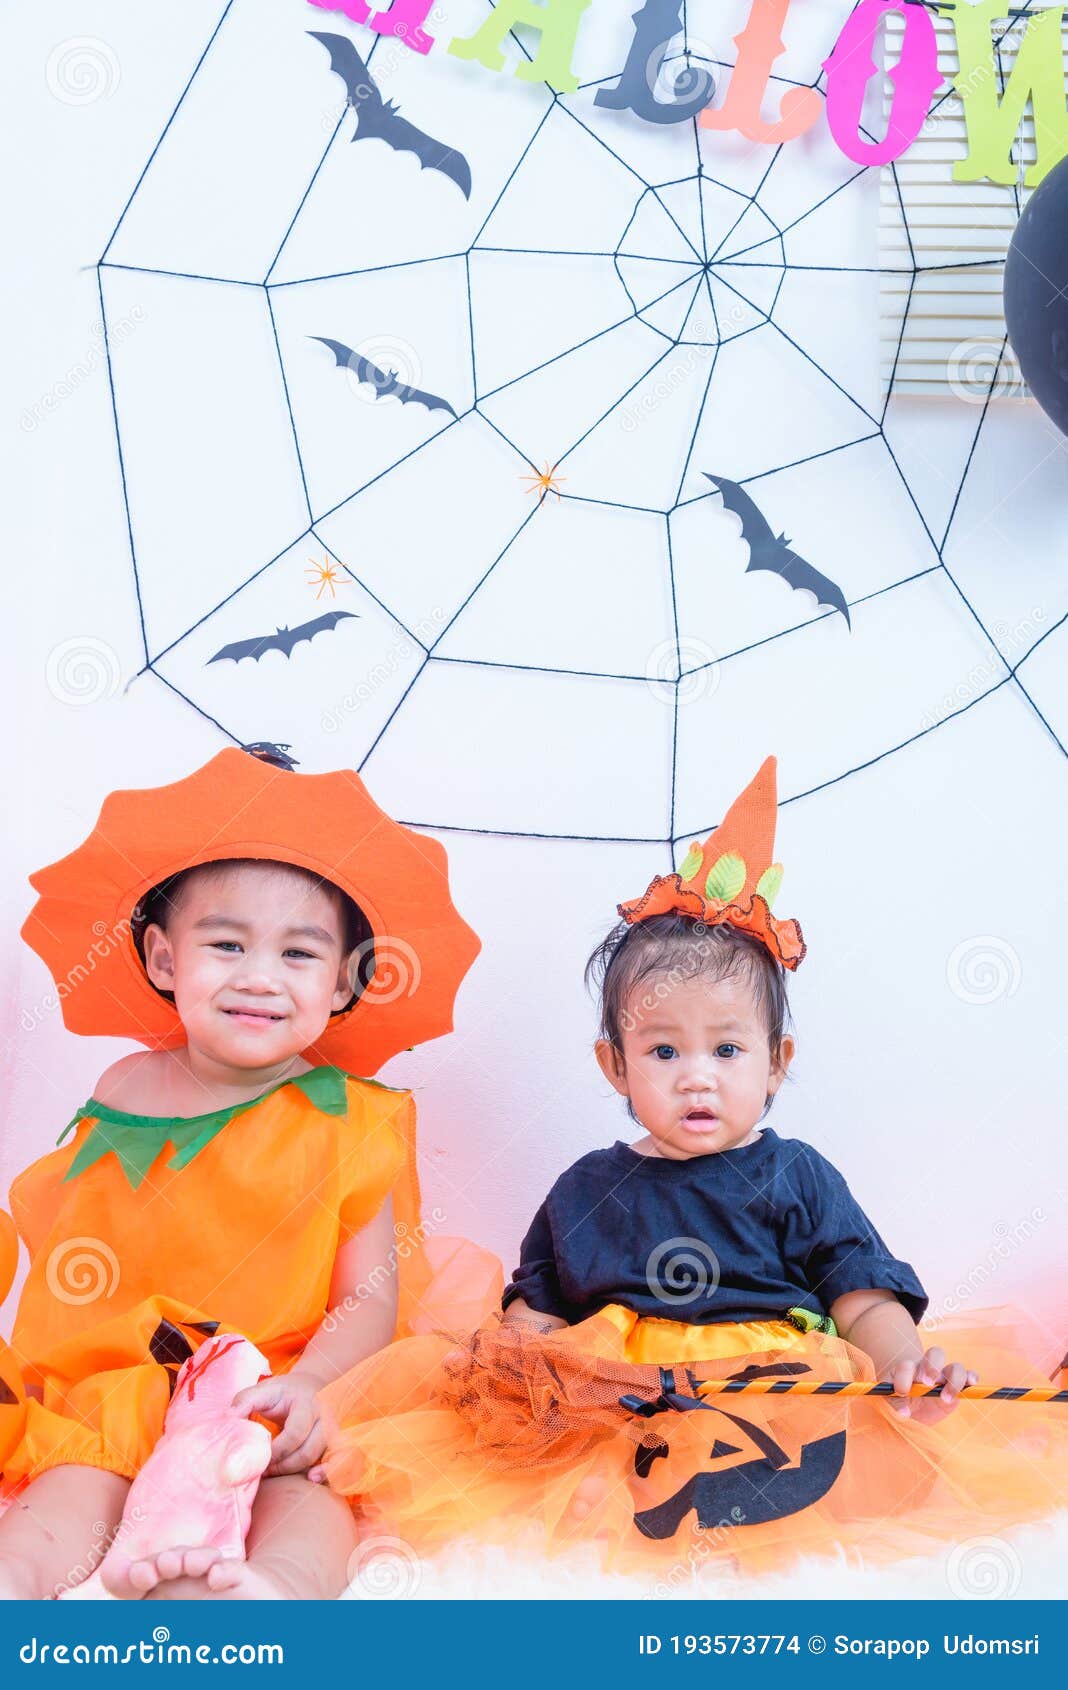 Fantasia Halloween Abóbora Bebê Menina - SACOLA DO BEBÊ